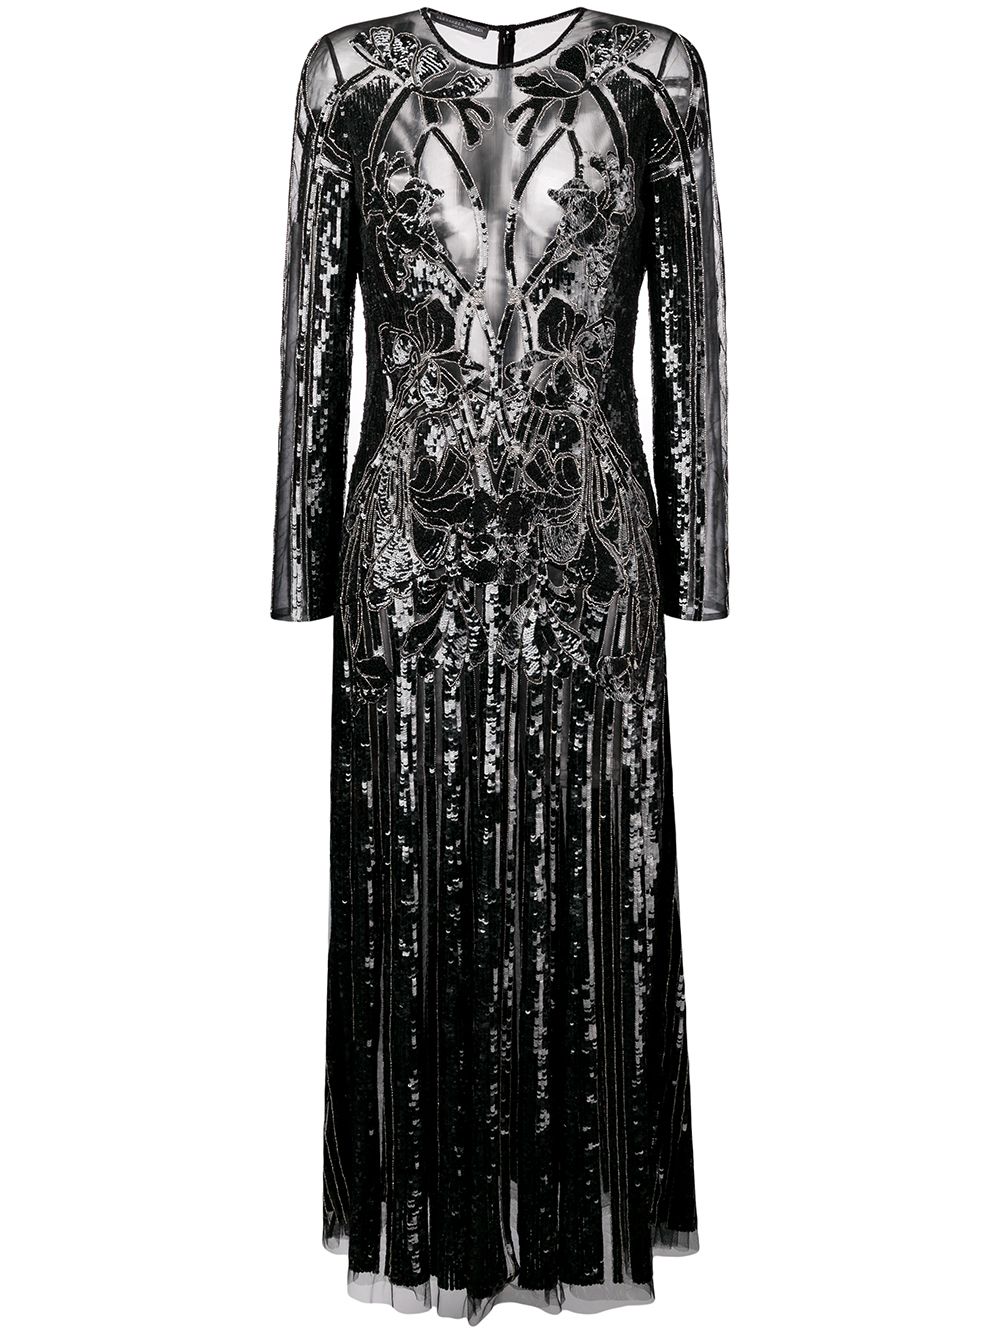 Alexander McQueen Structured Sheer Dress - Farfetch